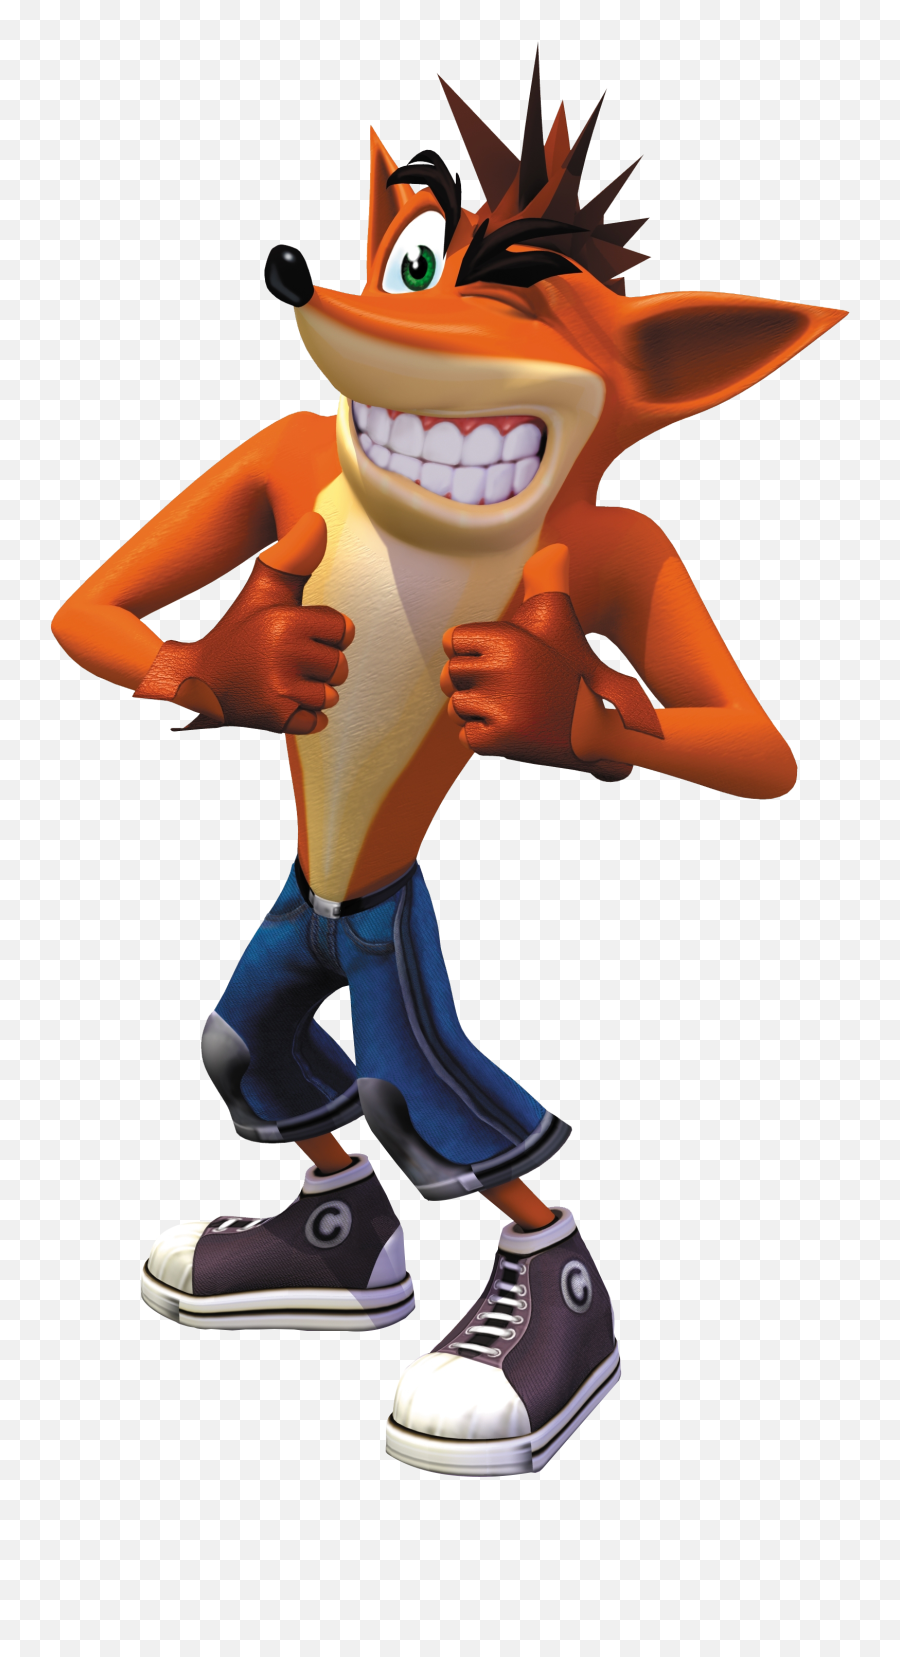 Crash Bandicoot - Crash Bandicoot Png Emoji,Crash Bandicoot Png